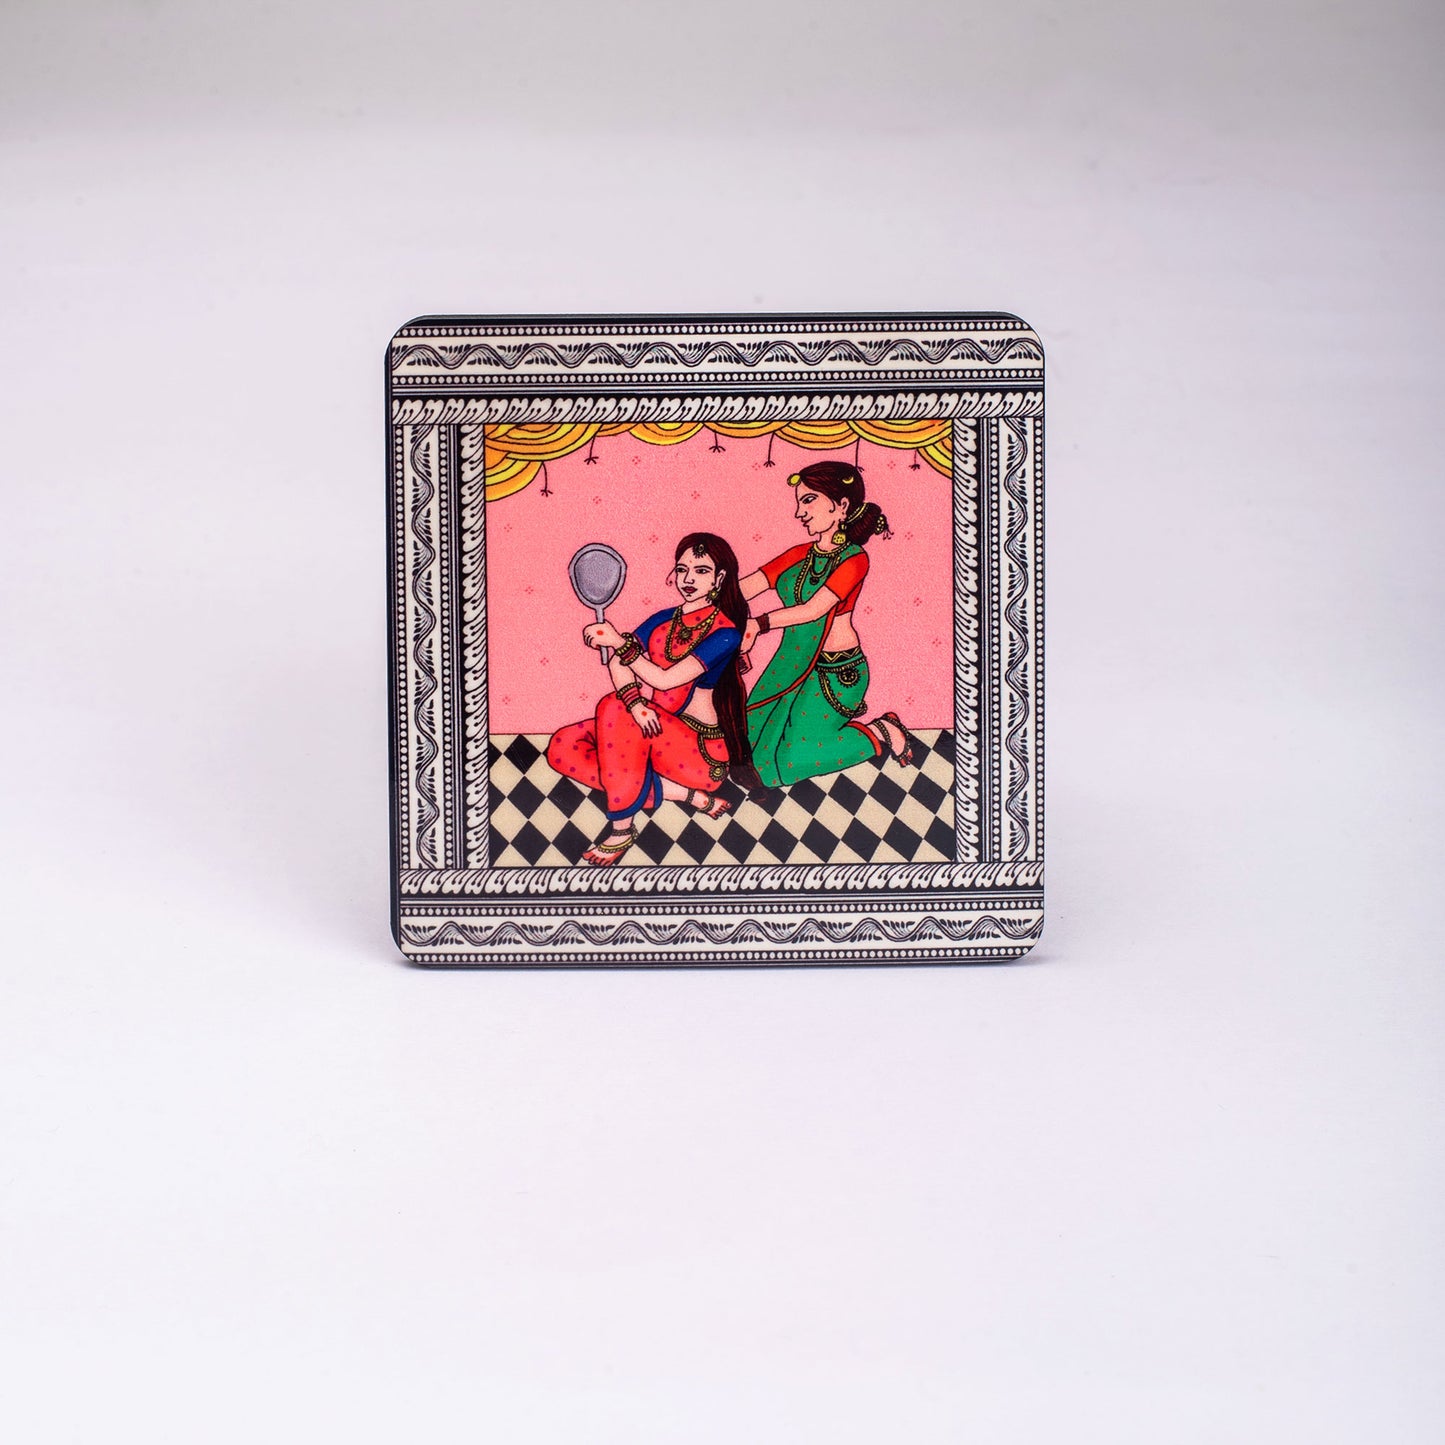 Shringaar Pattachitra Mug with Coaster - Pink